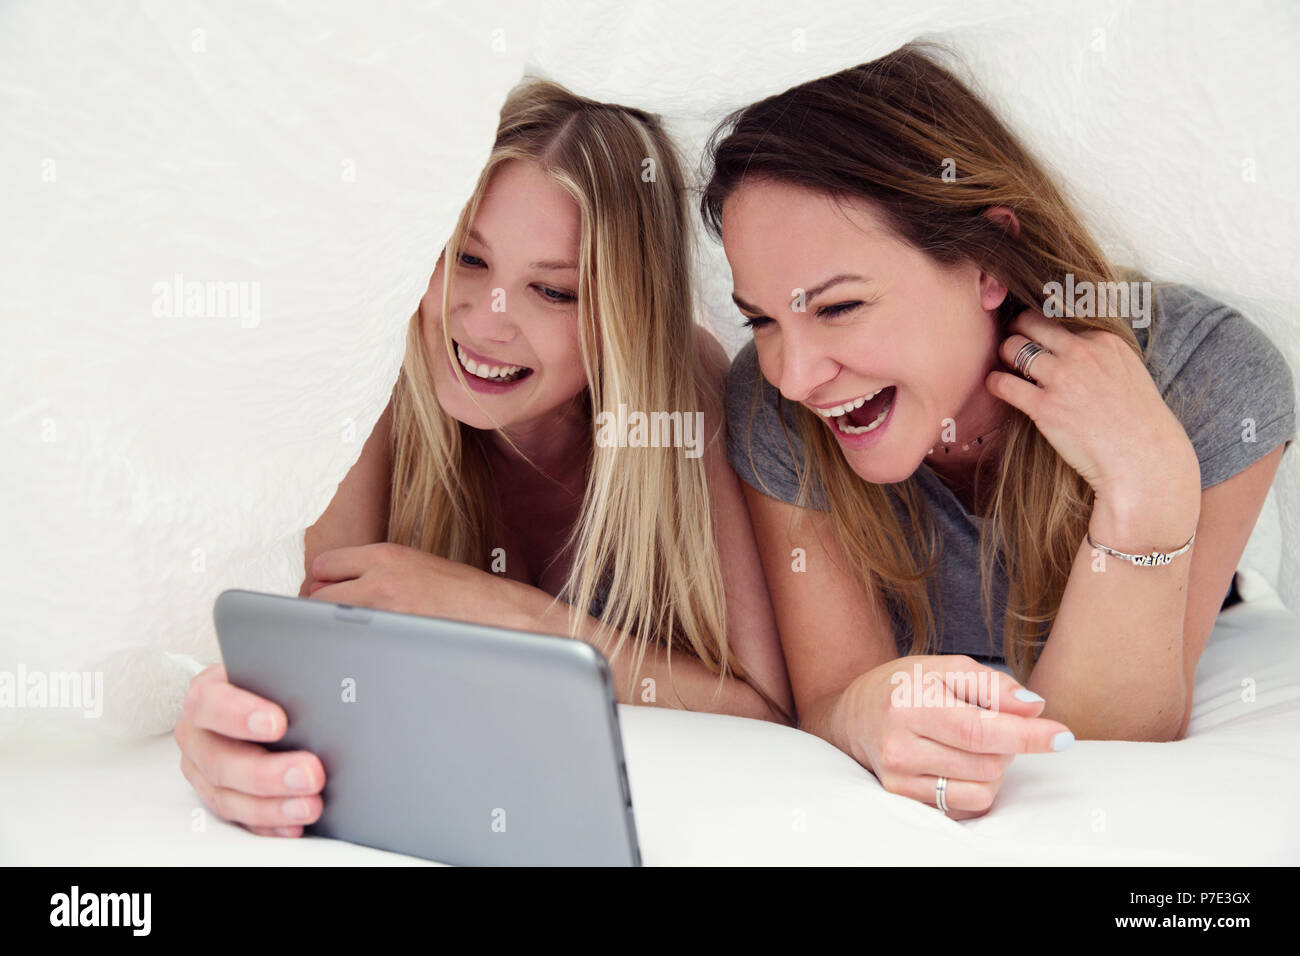 Drap de lit en dessous d'amis using digital tablet smiling Banque D'Images